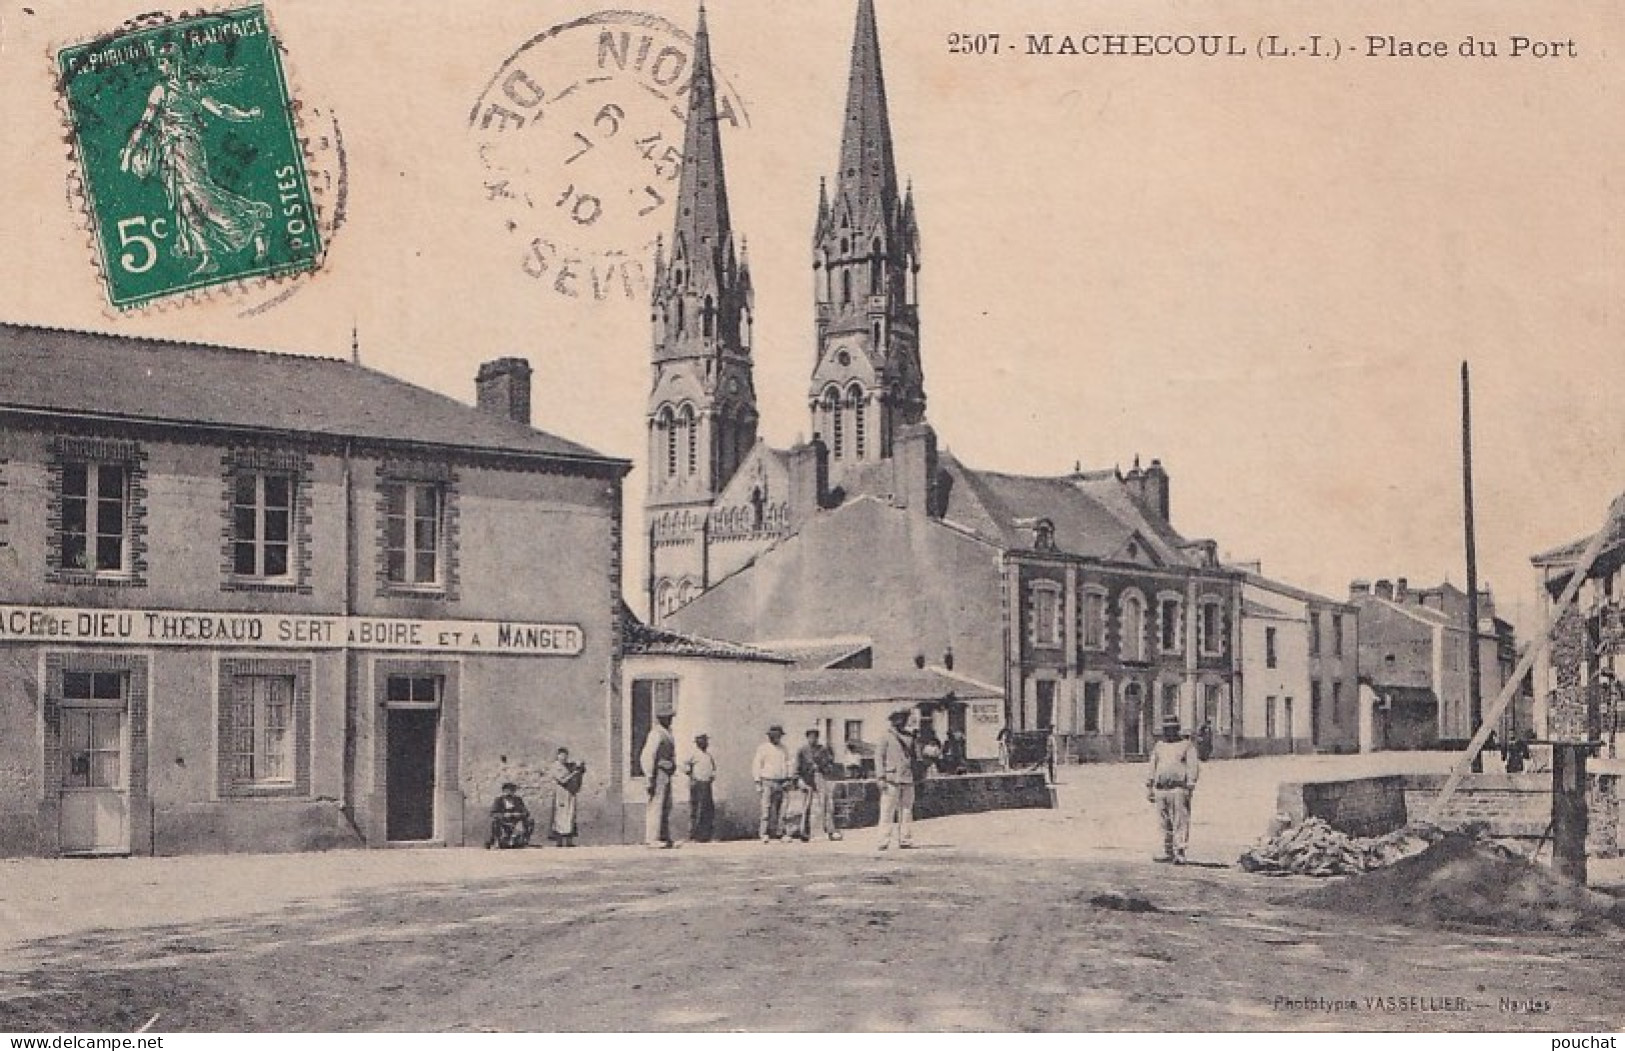  44) MACHECOUL - PLACE DU PORT - CAFE RESTAURANT GRACE DE DIEU THEBAUD SERT A BOIRE ET A MANGER - ANIMEE - EN 1910 - Machecoul